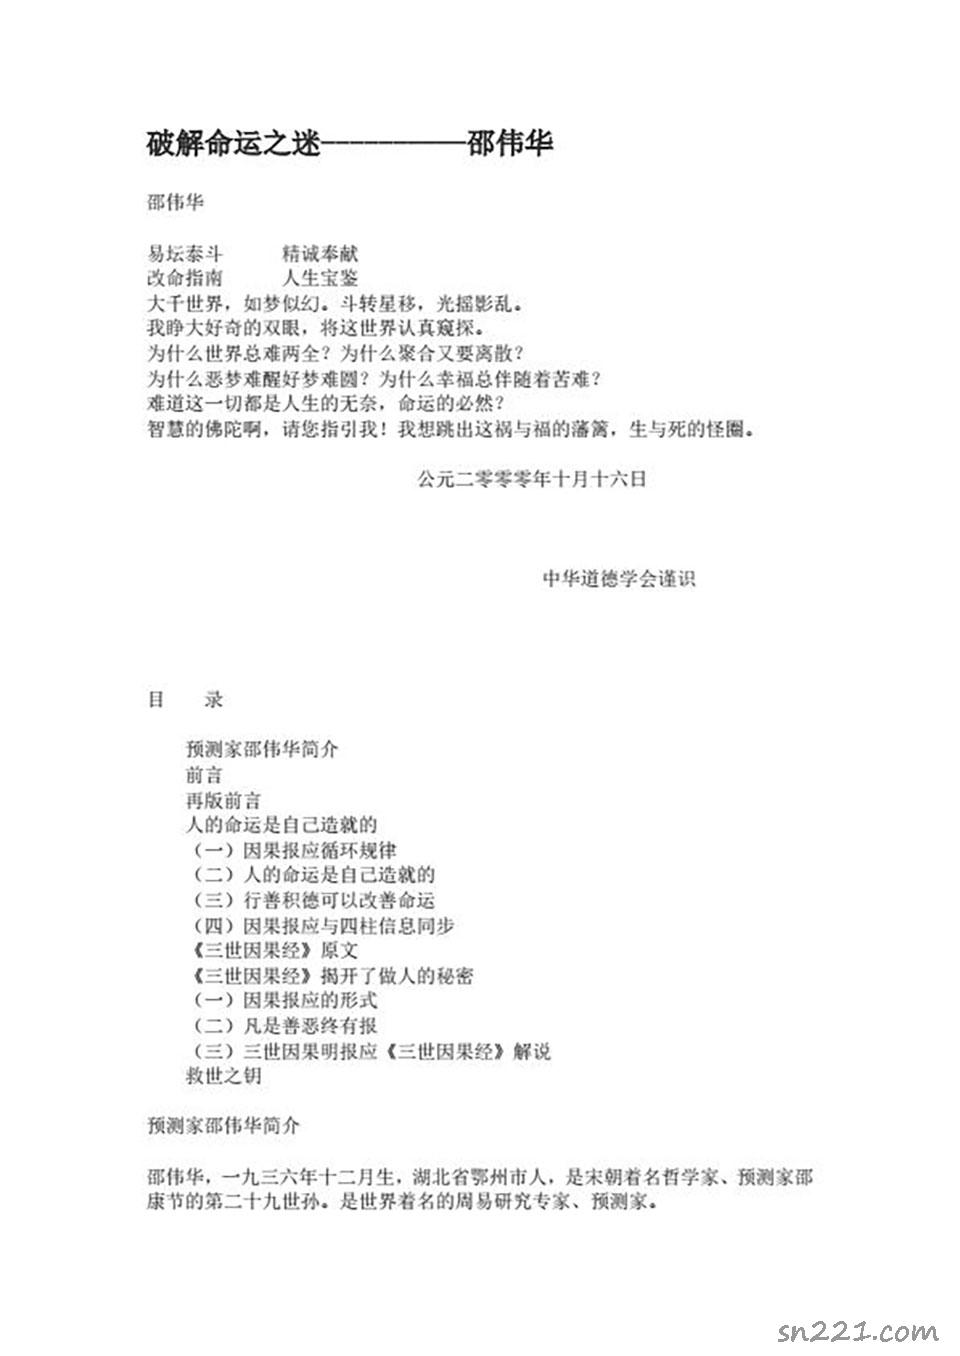 邵偉華-破解命運之迷31頁.pdf